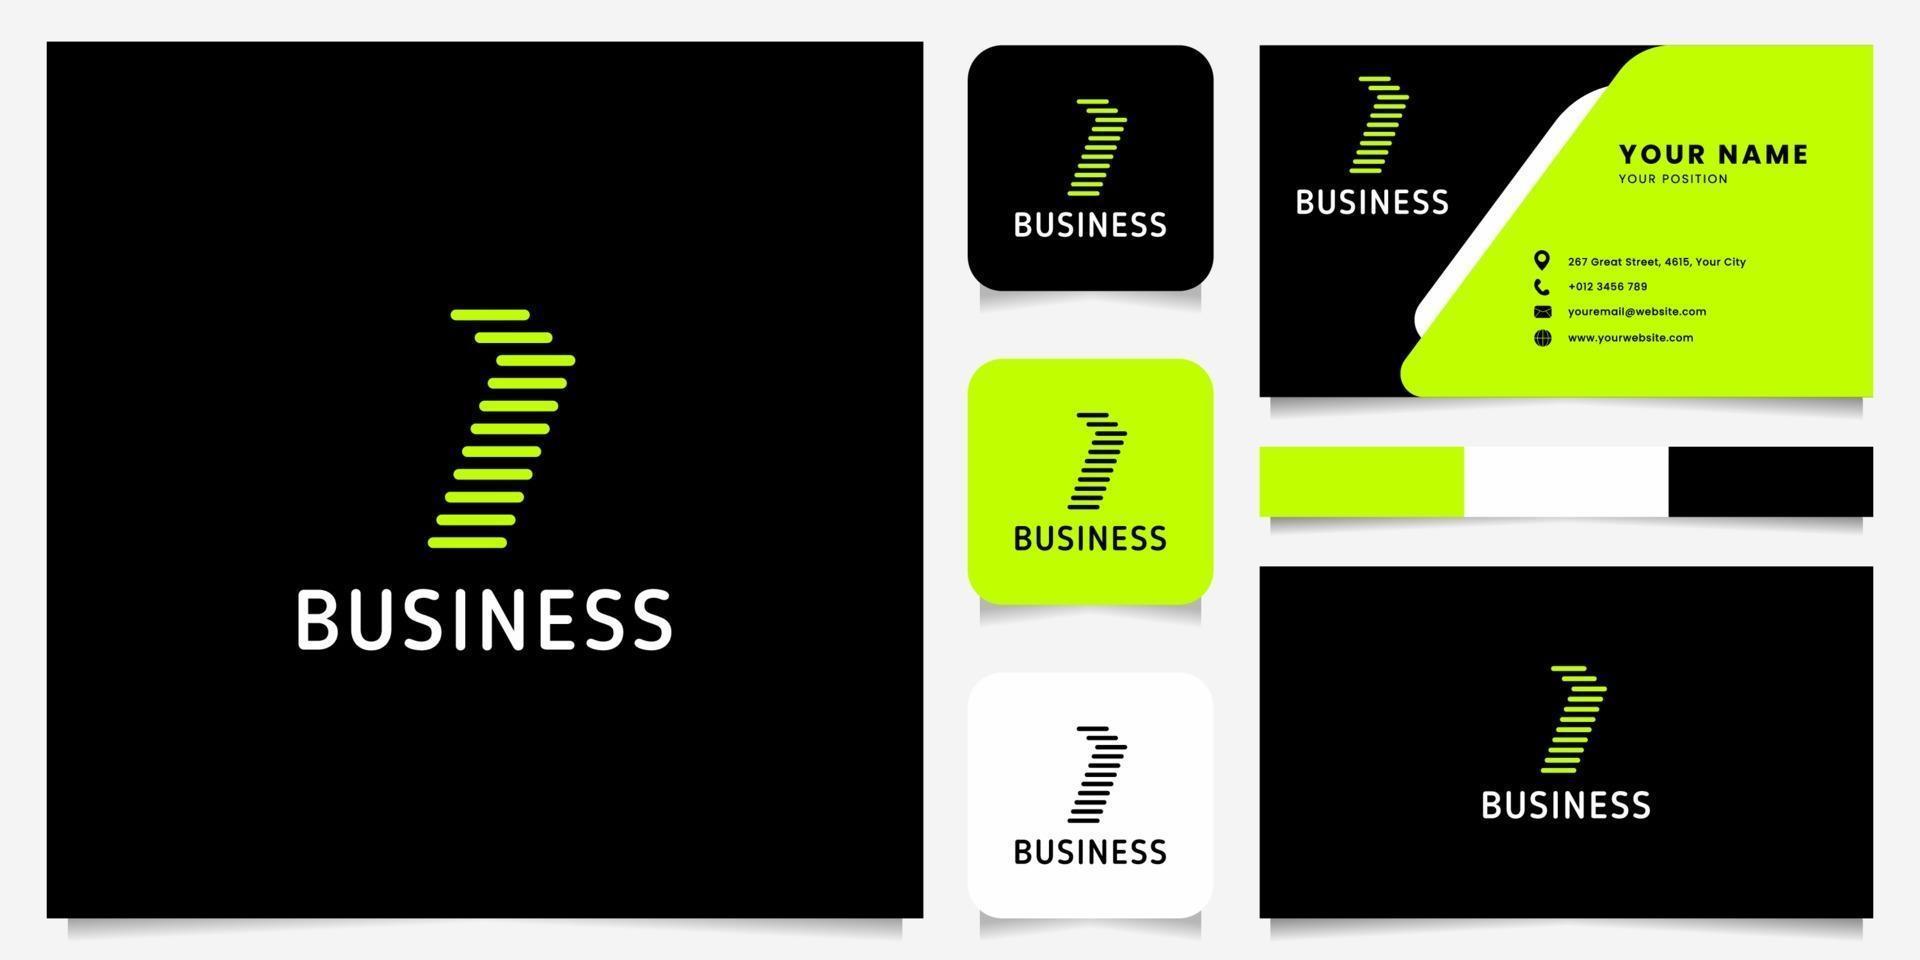 heldergroene pijl afgeronde lijnen letter i-logo op zwarte achtergrond met sjabloon voor visitekaartjes vector